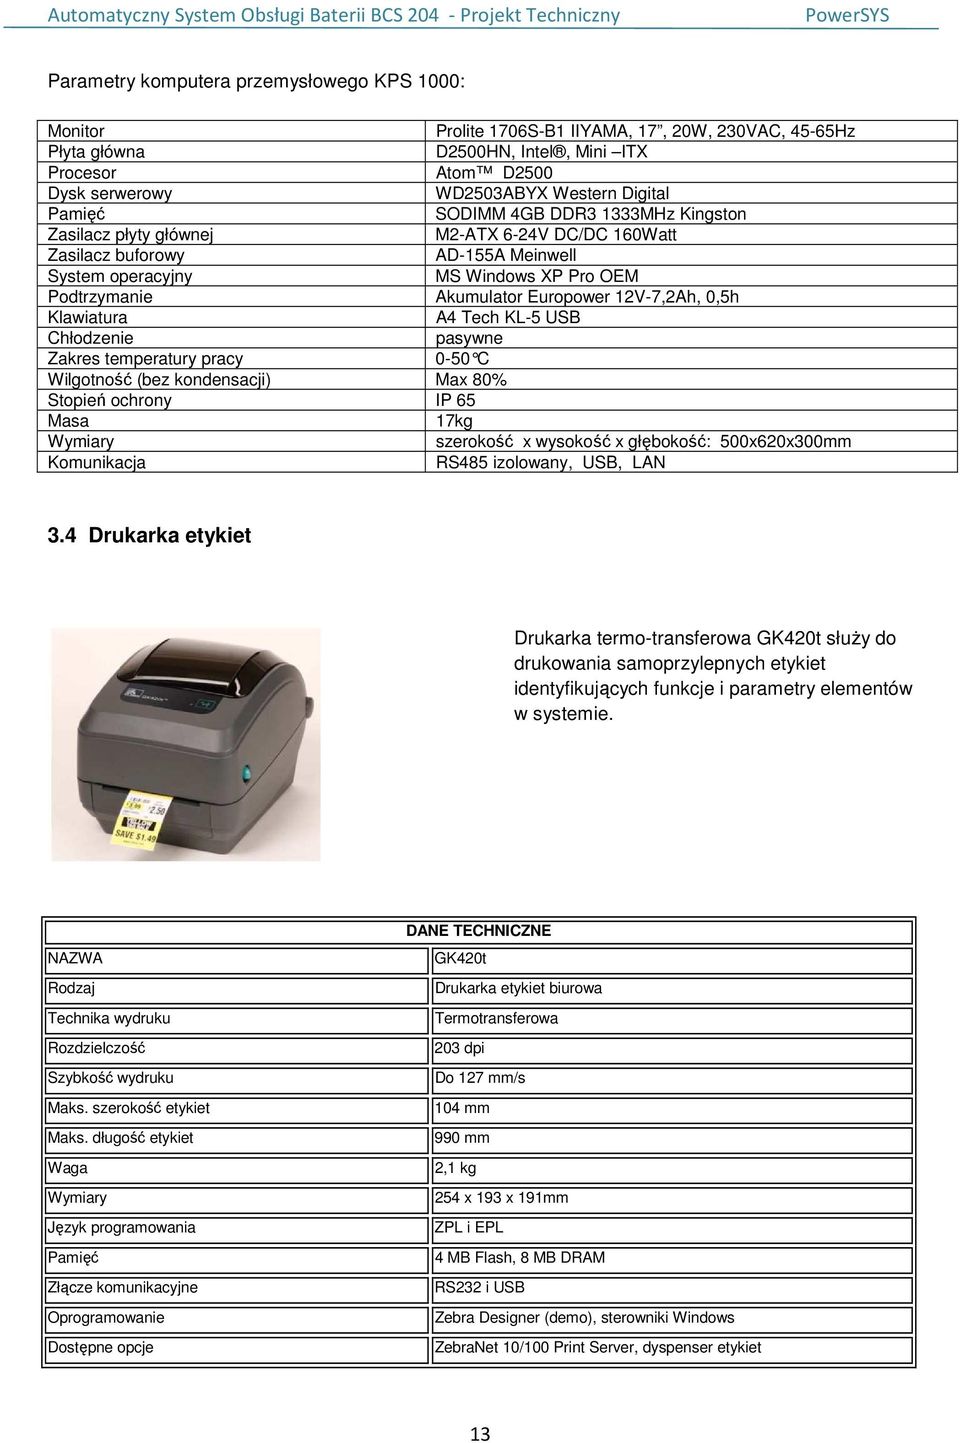 Europower 12V-7,2Ah, 0,5h Klawiatura A4 Tech KL-5 USB Chłodzenie pasywne Zakres temperatury pracy 0-50 C Wilgotność (bez kondensacji) Max 80% Stopień ochrony IP 65 Masa 17kg Wymiary szerokość x